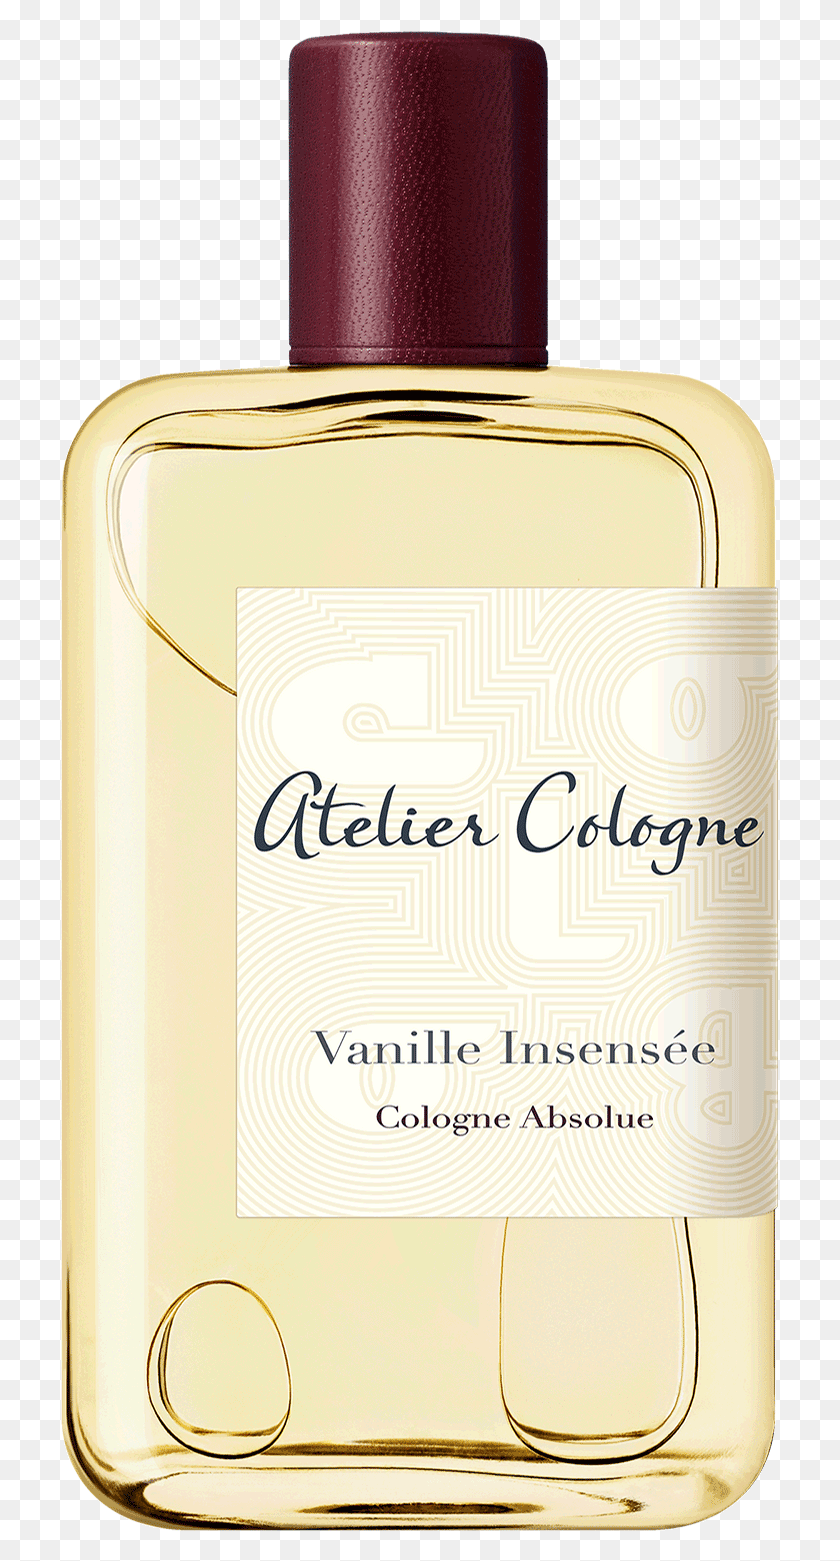 719x1501 Descargar Png Perfume Vanille Insense De Atelier Cologne Atelier Cologne, Botella, Cosméticos, Licor Hd Png